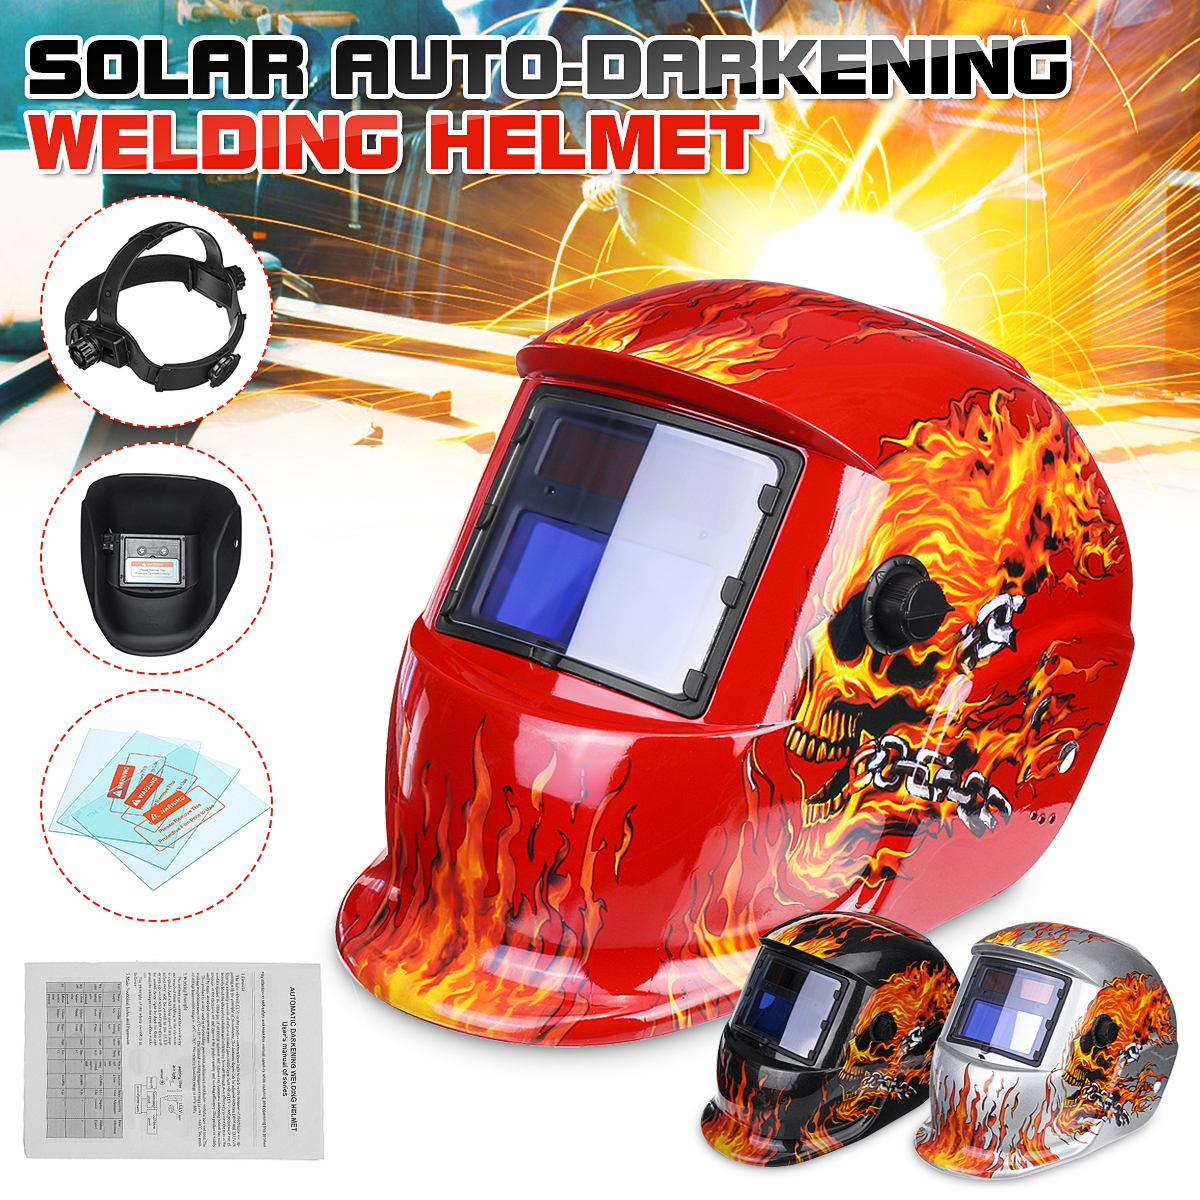 Solar-Auto-Darkening-Welding-Helmet-Len-Mask-Grinding-Welder-Protective-Mask-1625108-1